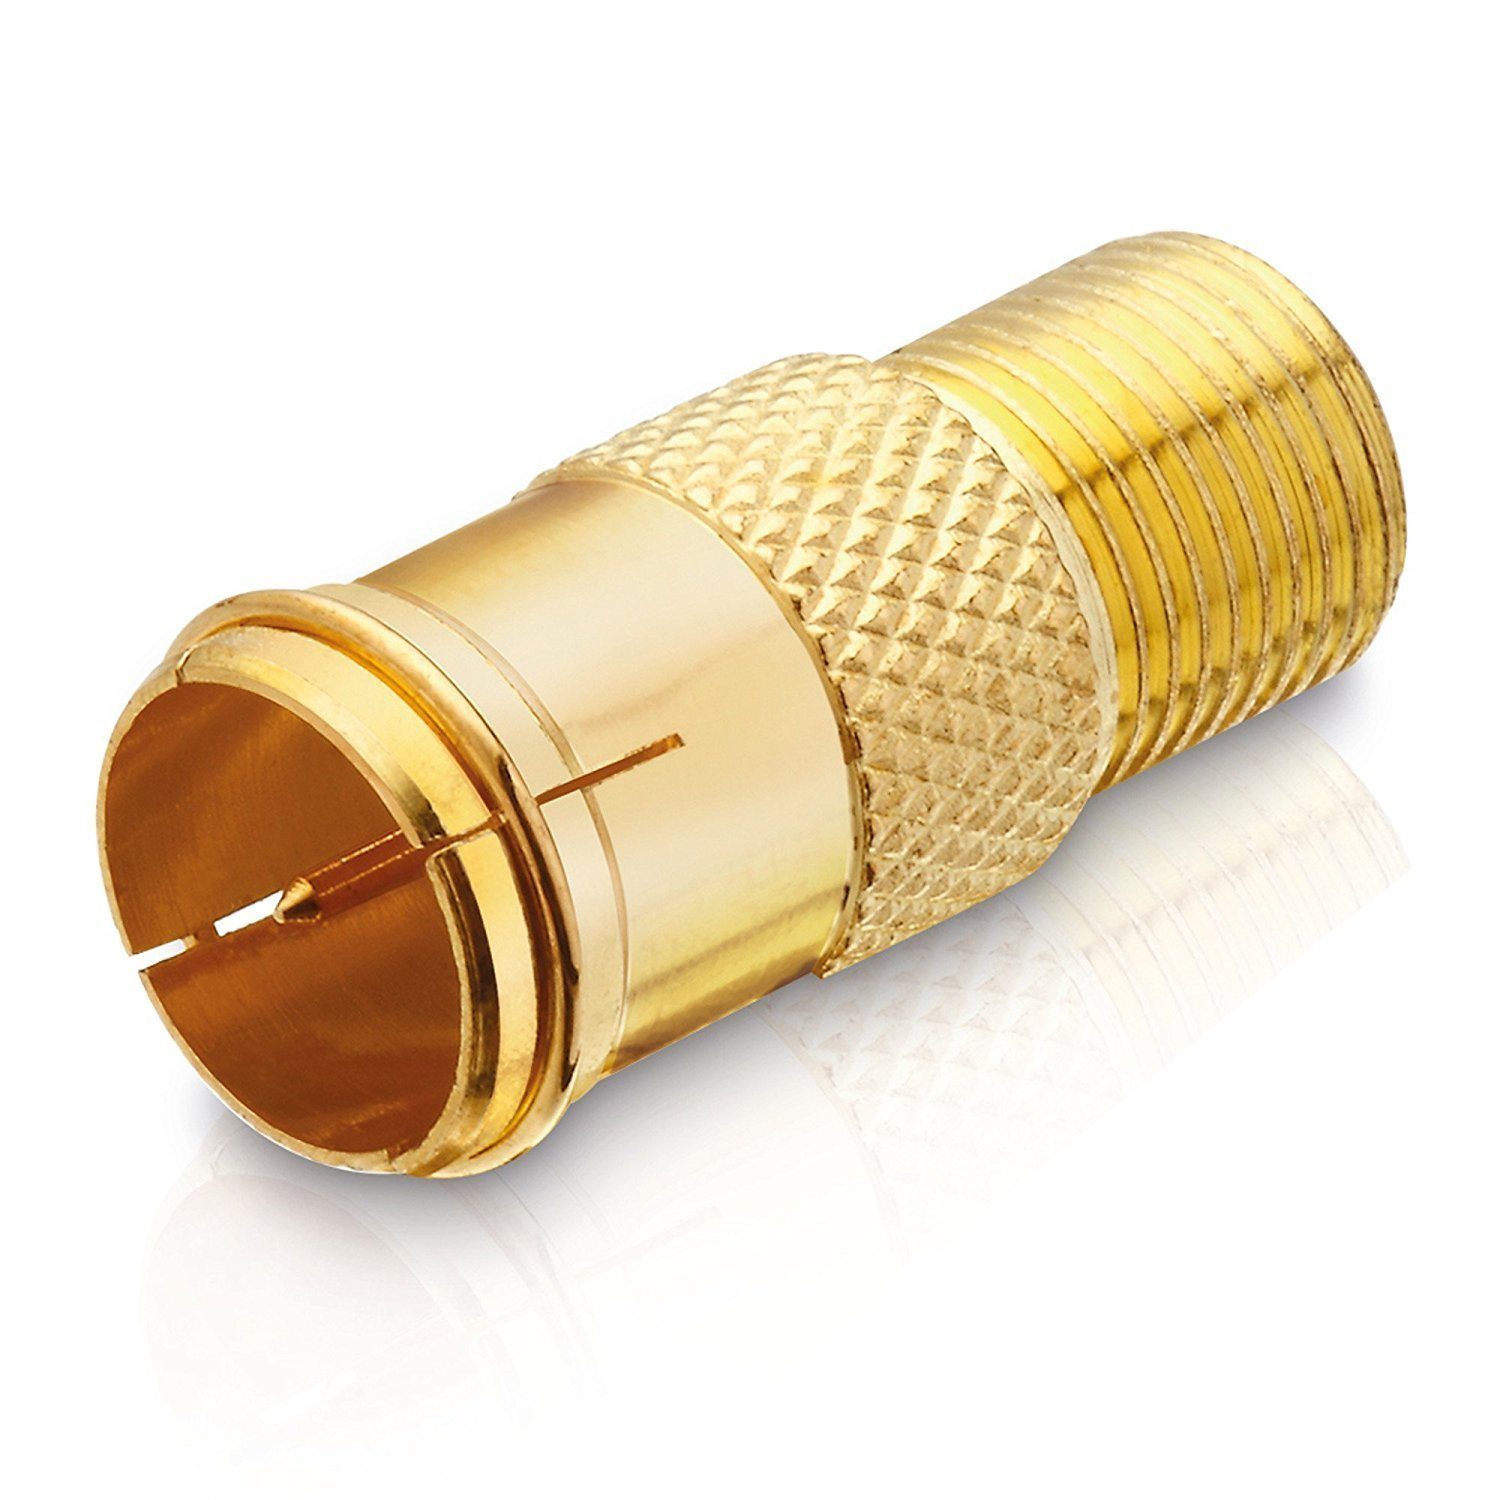 adaptare adaptare 60524 Adapter mit F-Quick-Stecker auf F-Buchse vergoldet gold SAT-Kabel